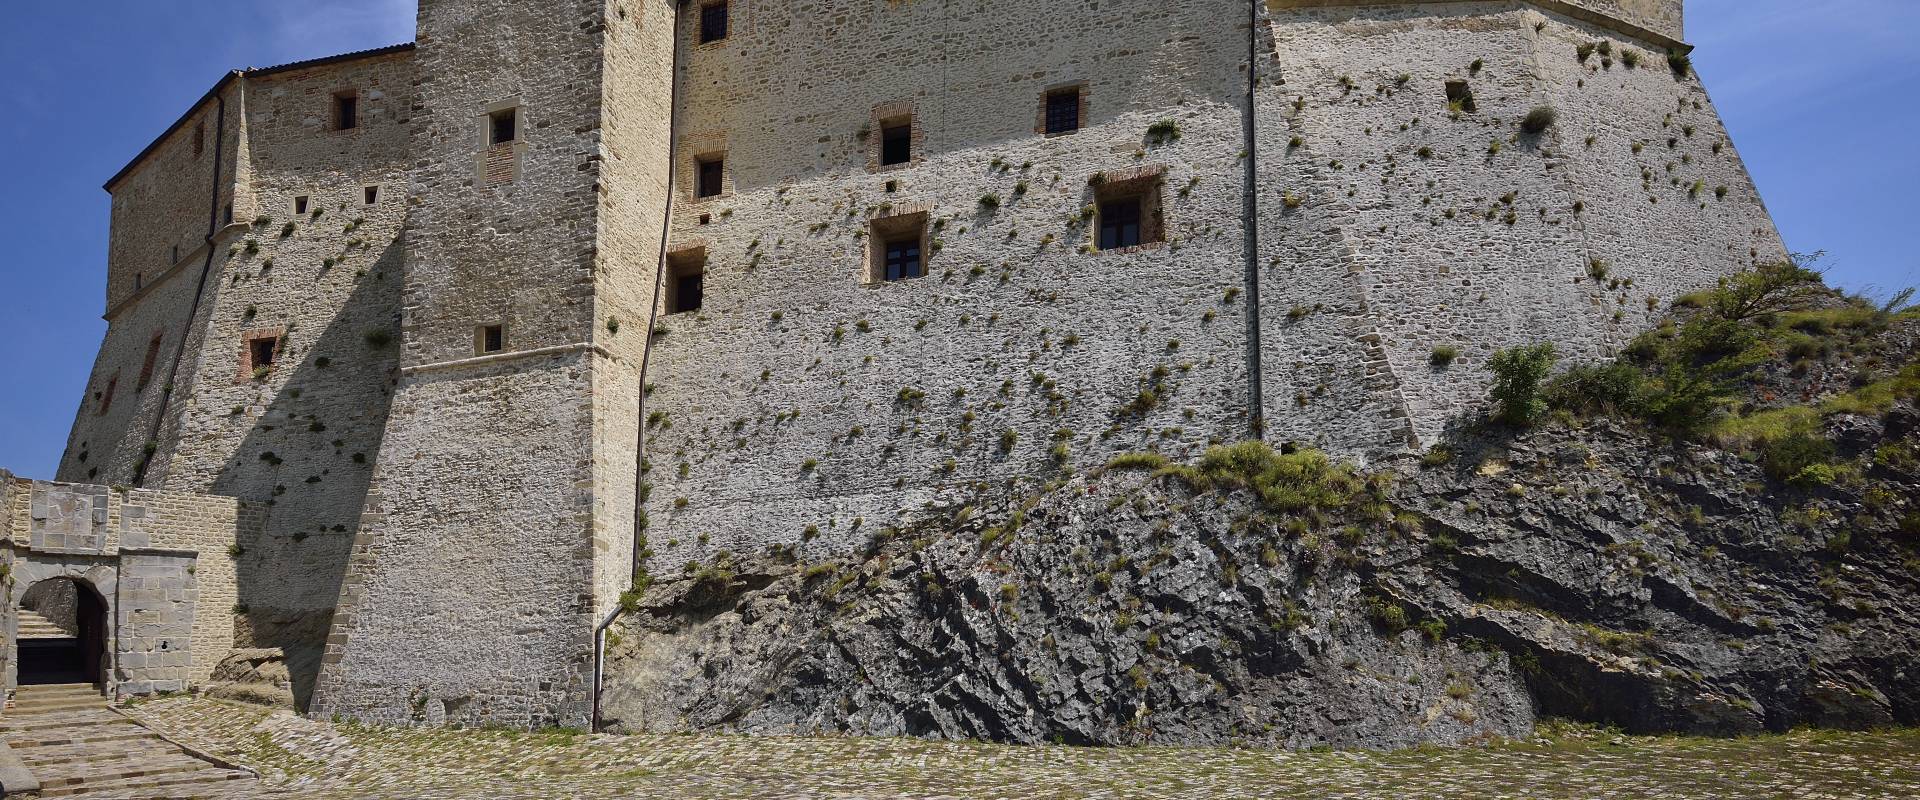 San leo rocca, mastio centrale foto di Carlo grifone